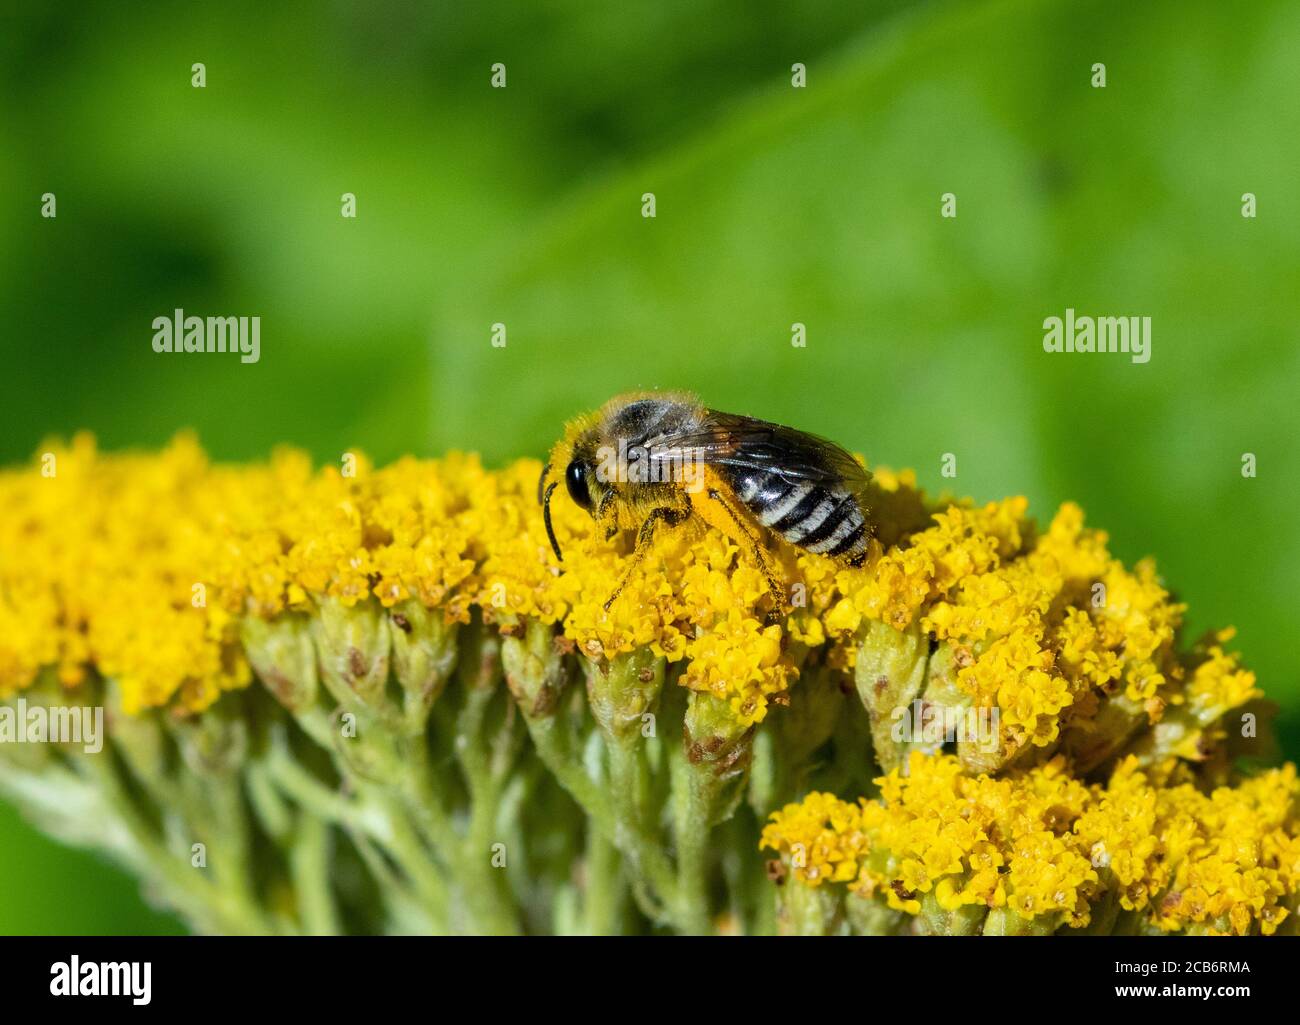 Colletes mining bee on Achillea flower head Stock Photo